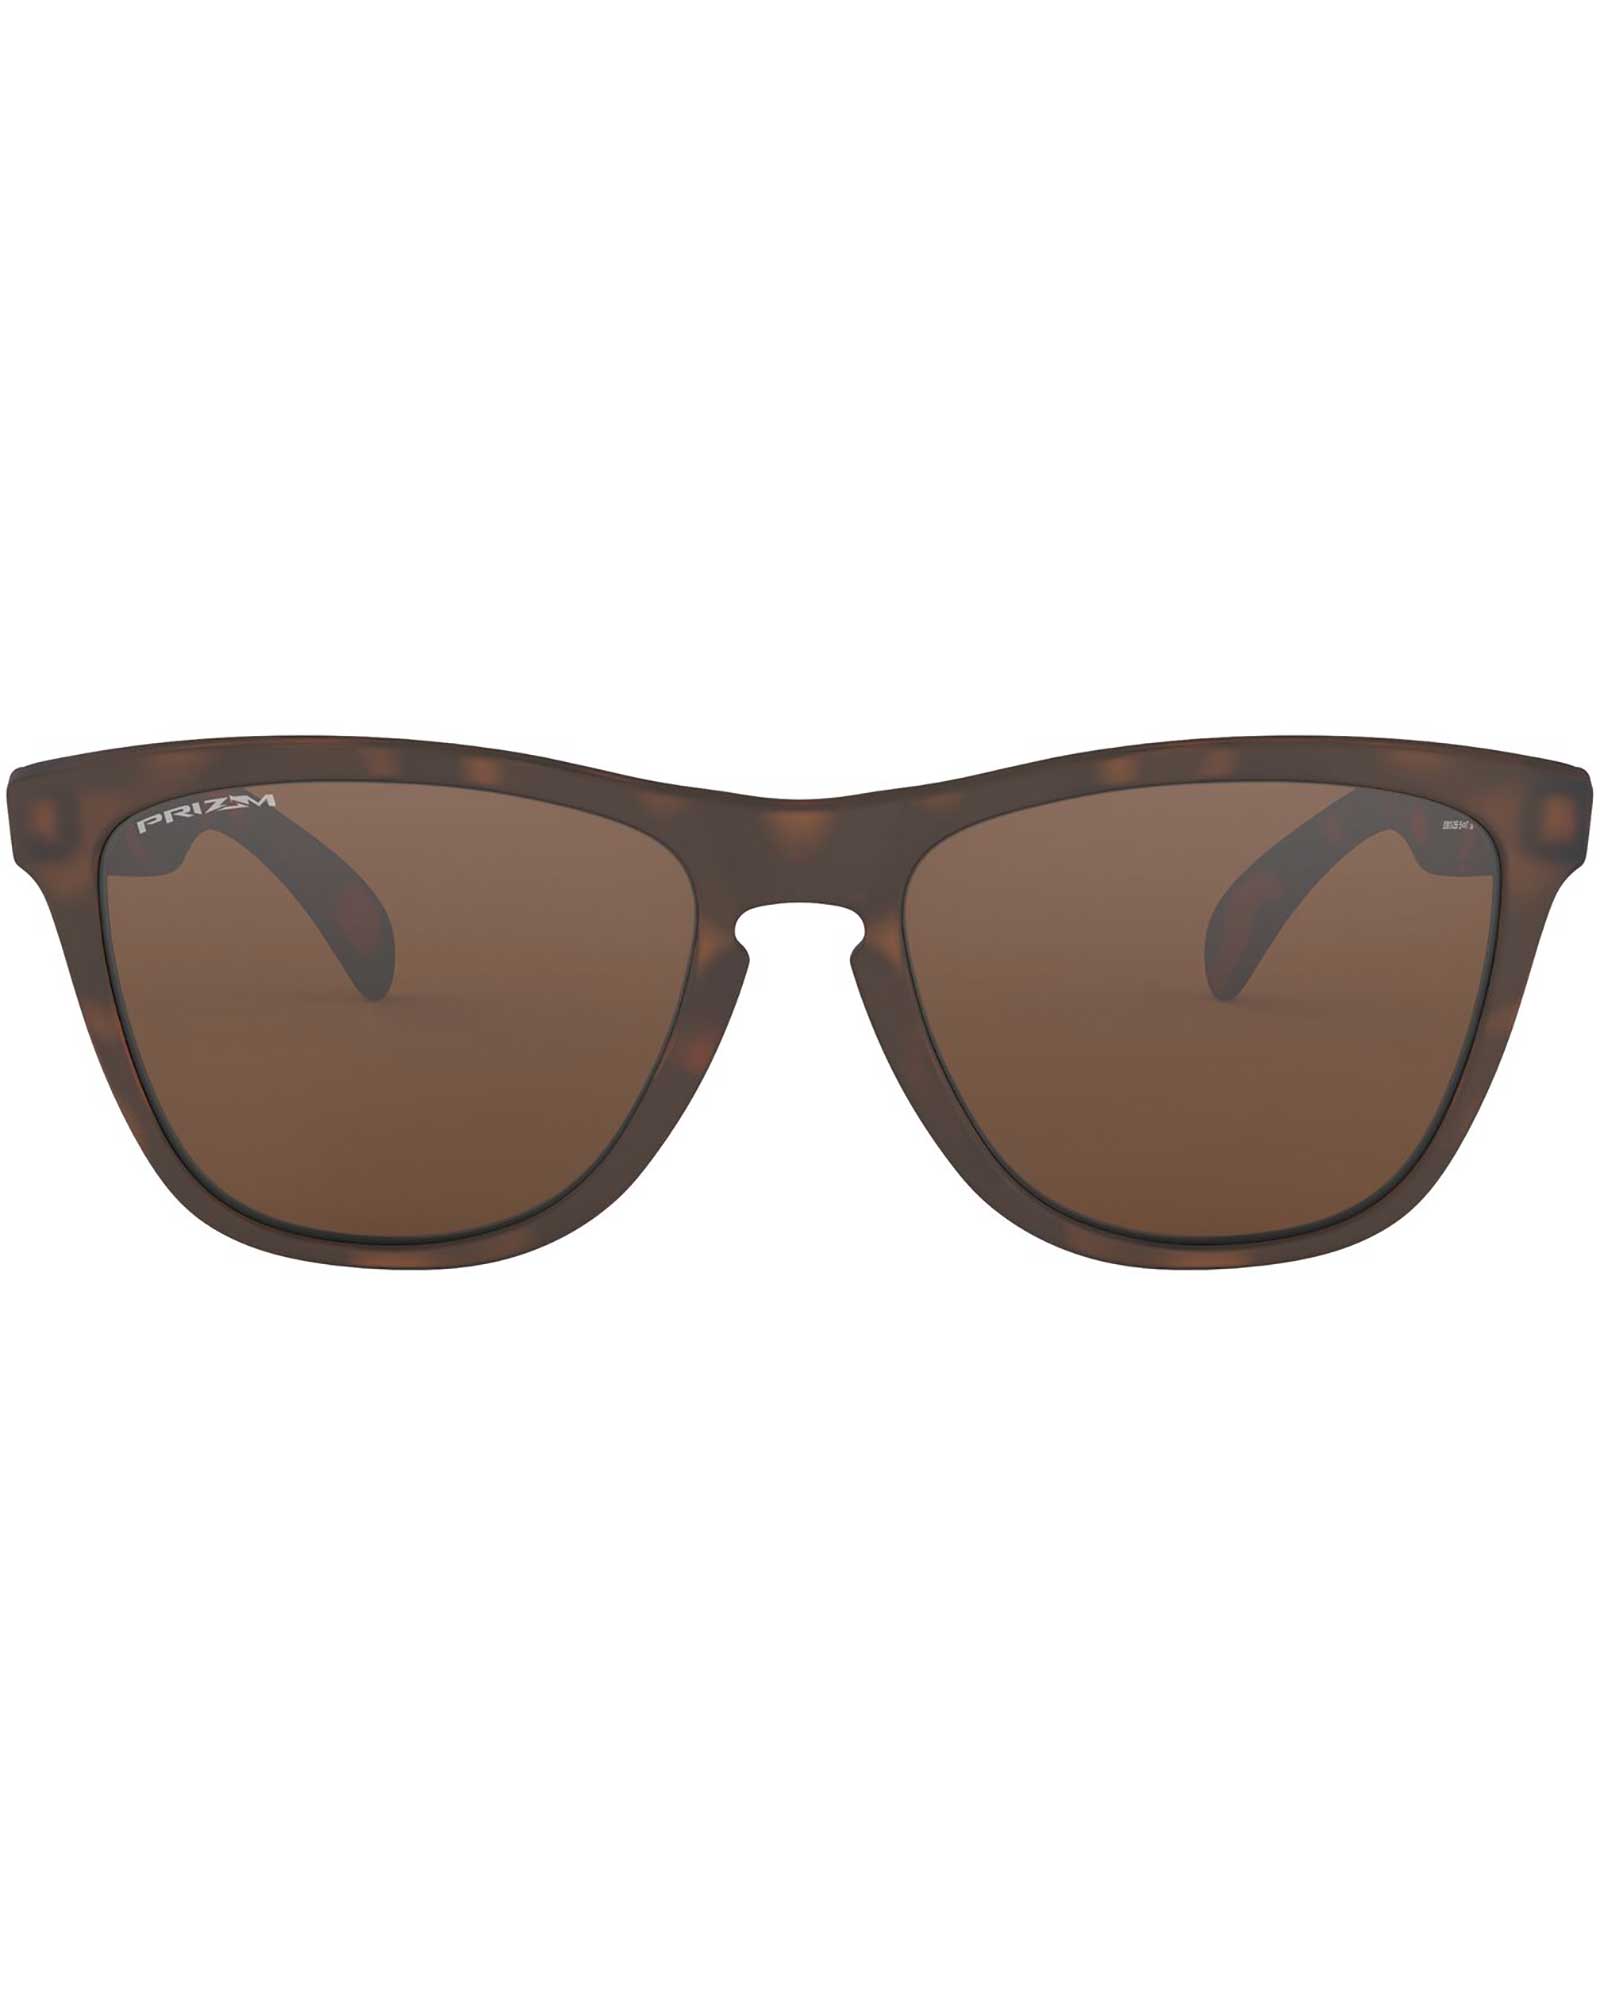 Oakley Frogskins Matte Brown Tortoise / Prizm Tungsten Sunglasses